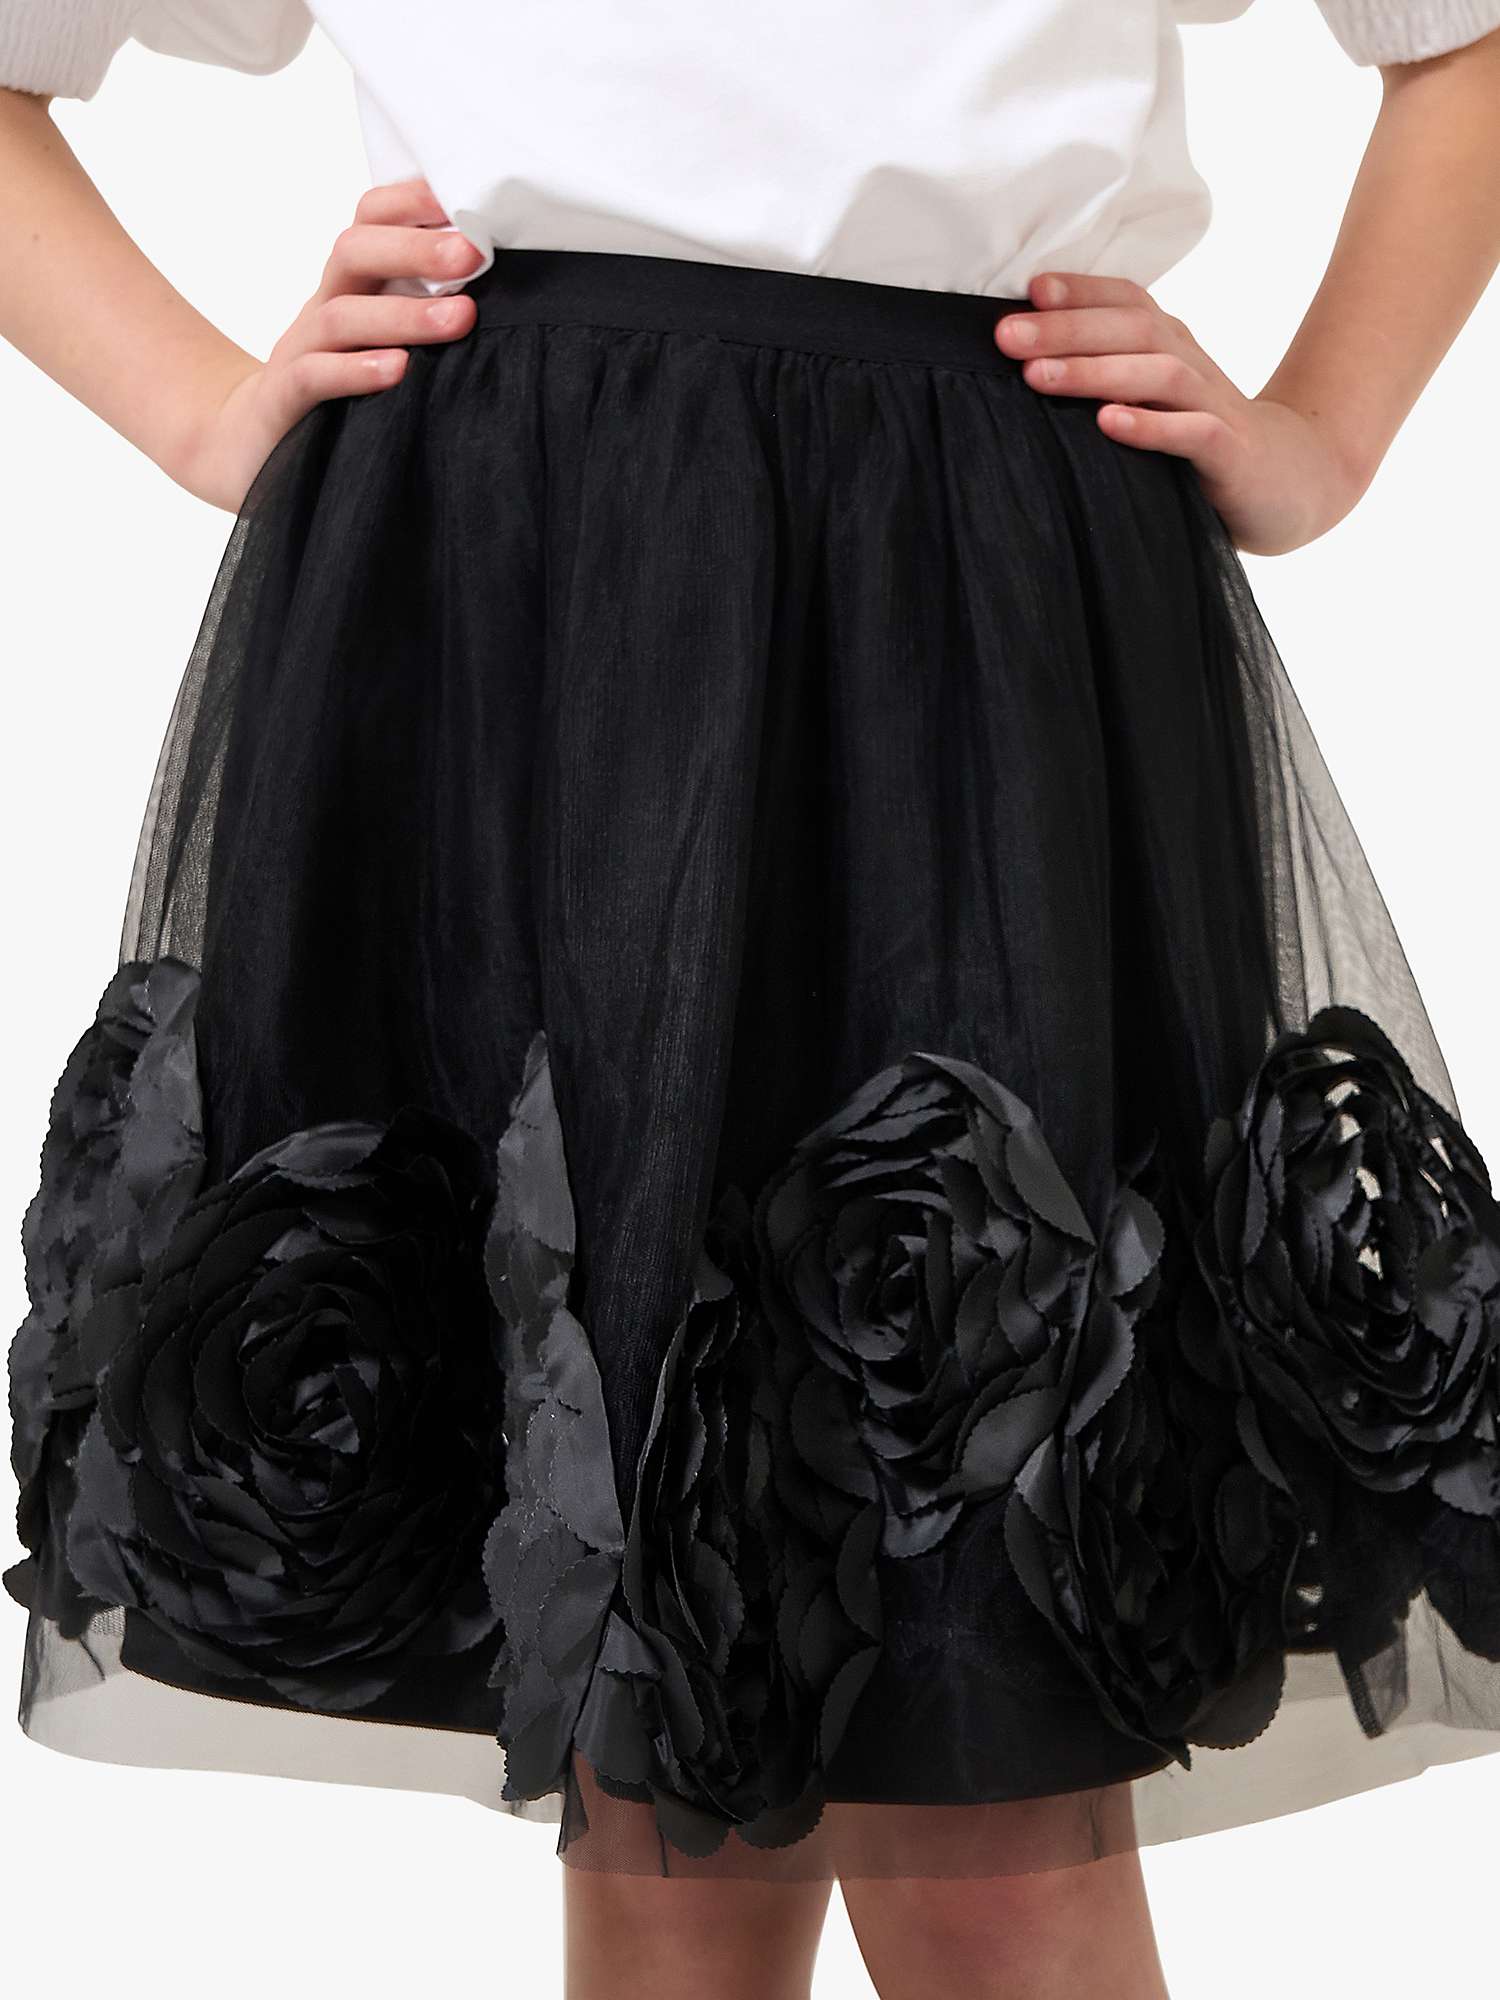 Buy Angel & Rocket Kids' Collette Rose Bud Mesh Skirt, Black Online at johnlewis.com